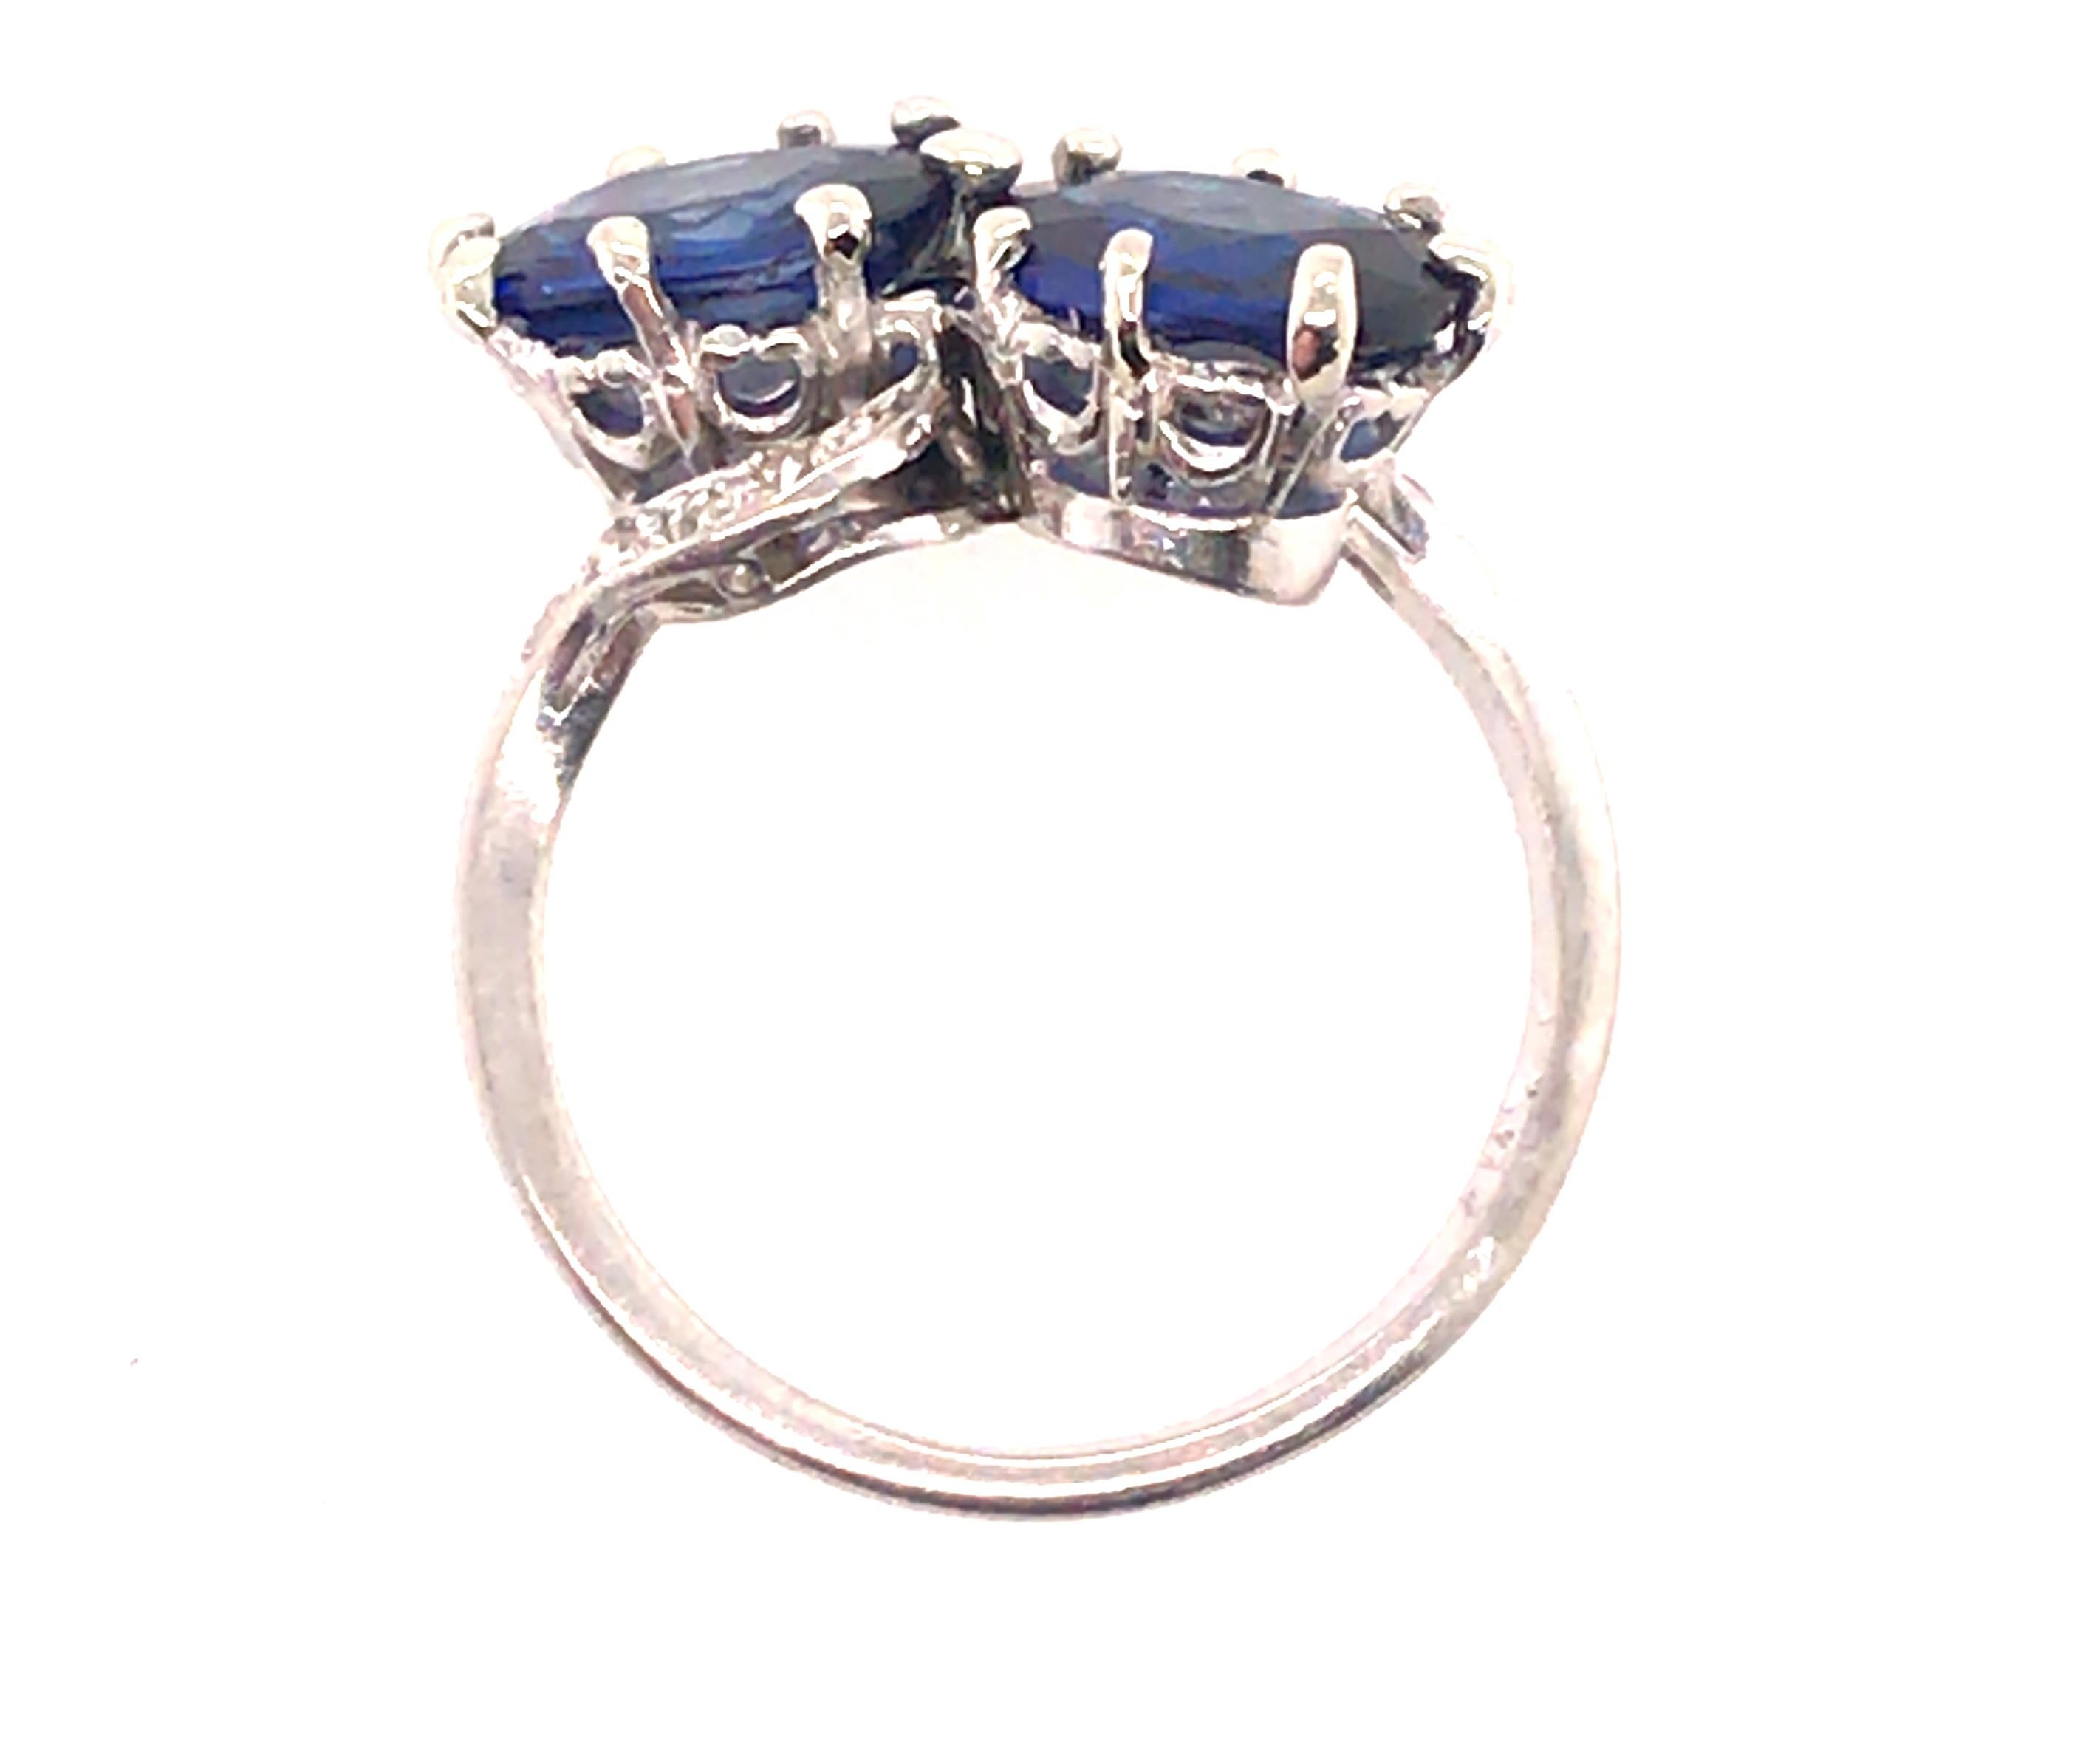 Echtes Original Edwardian Antik aus 1900's Vintage Bypass Saphir Diamant Cocktail Ring 3,91ct Platin 


Mit 2 brillanten, fetten, natürlichen blauen Saphiren im Ovalschliff von insgesamt 3,75ct 

Jeder Saphir hat fast 2 Karat

Echte Diamanten im